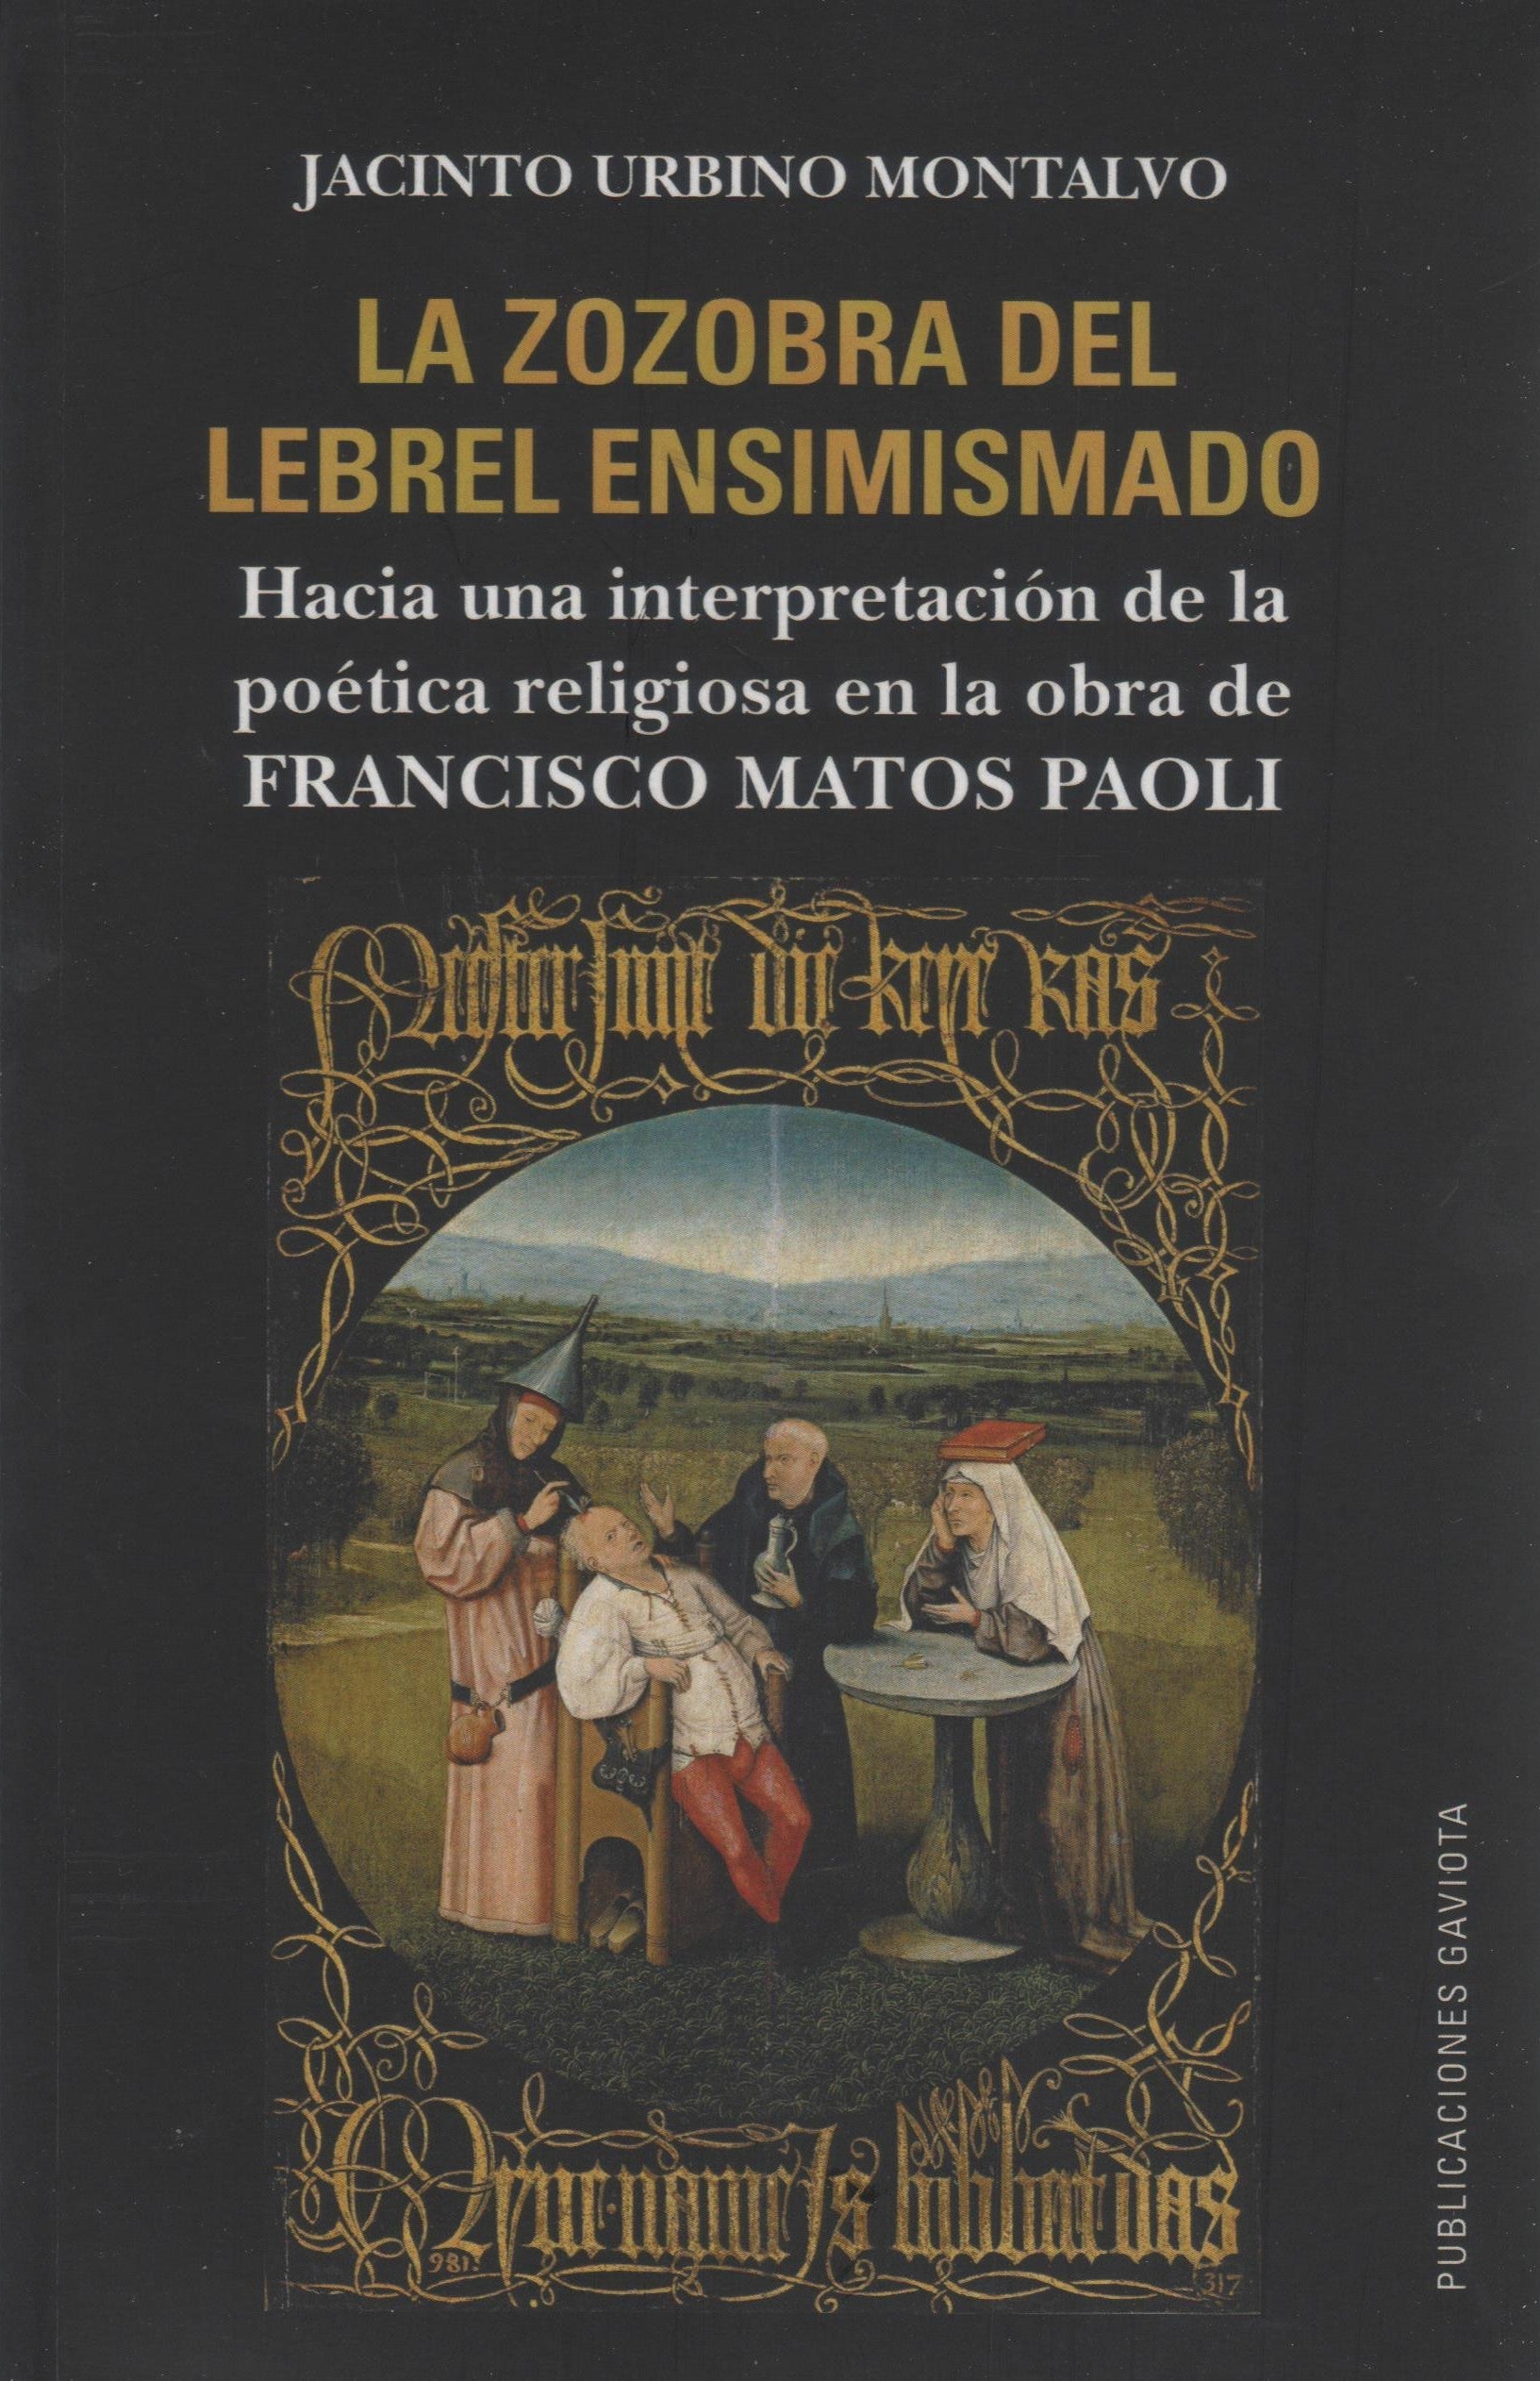 La zozobra del lebrel ensimismado: Hacia una interpretación de la poética religiosa en la obra de Francisco Matos Paoli